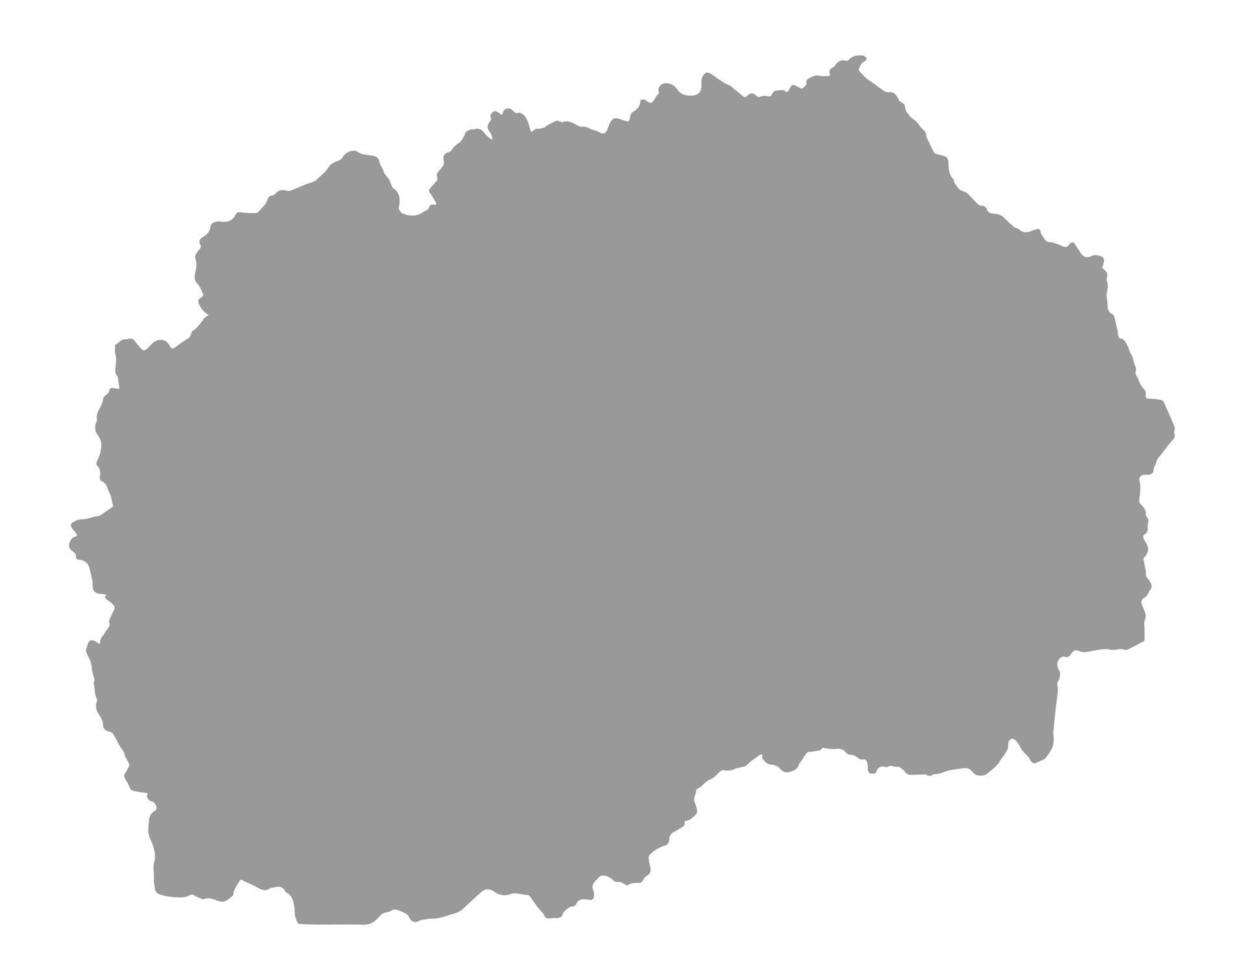 carte de la macédoine du nord sur png ou fond transparent.symbole de la macédoine du nord.illustration vectorielle vecteur